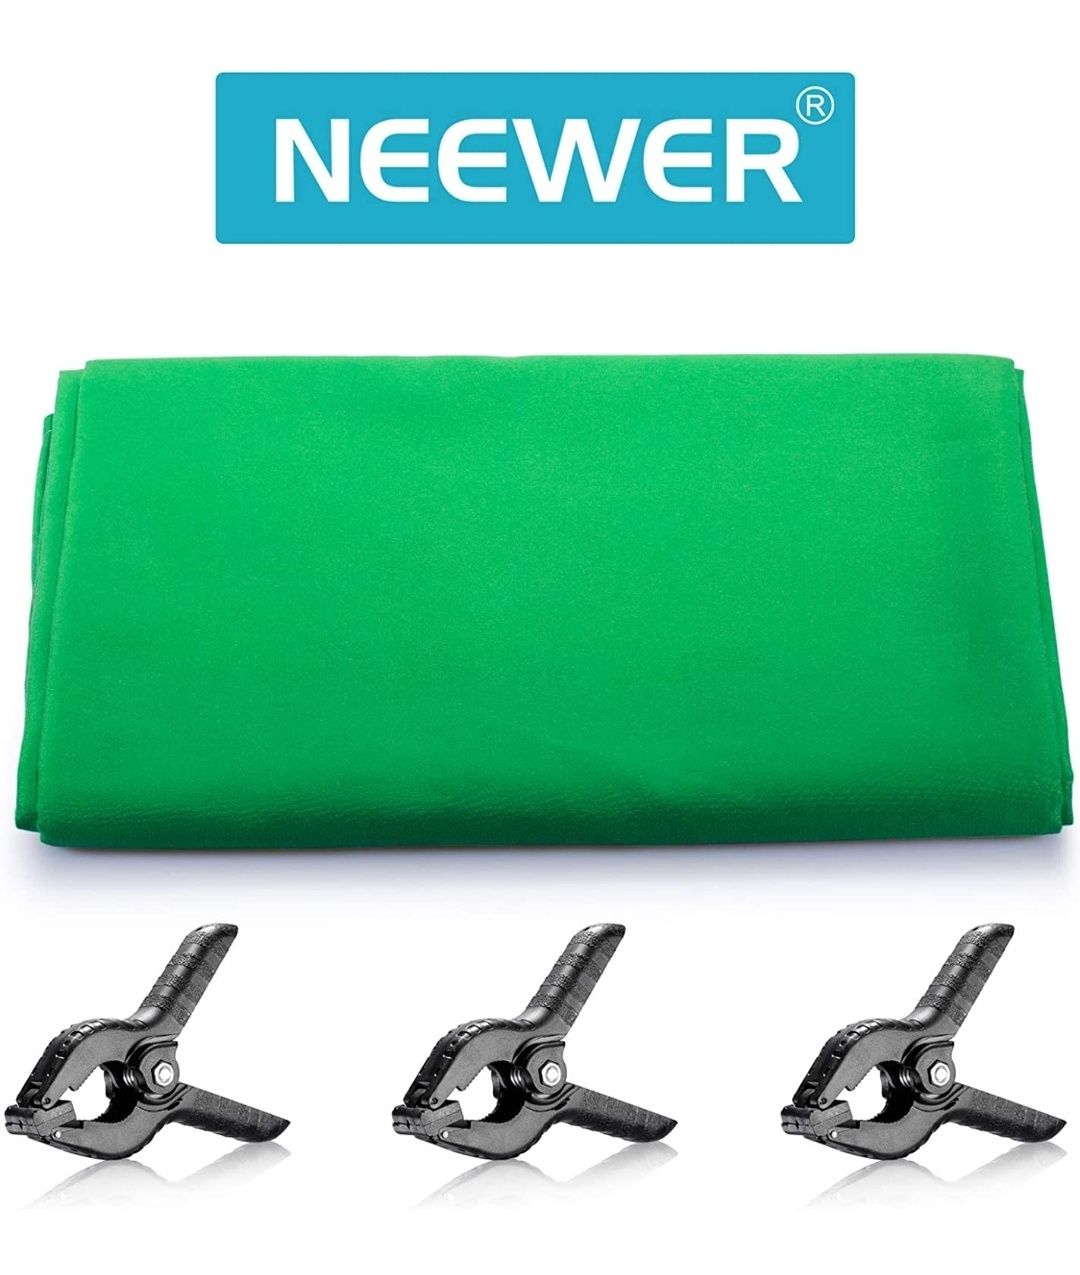 Fundo verde Chromakey de 3,9 por 2,8M da Neewer com abraçadeiras NOVO